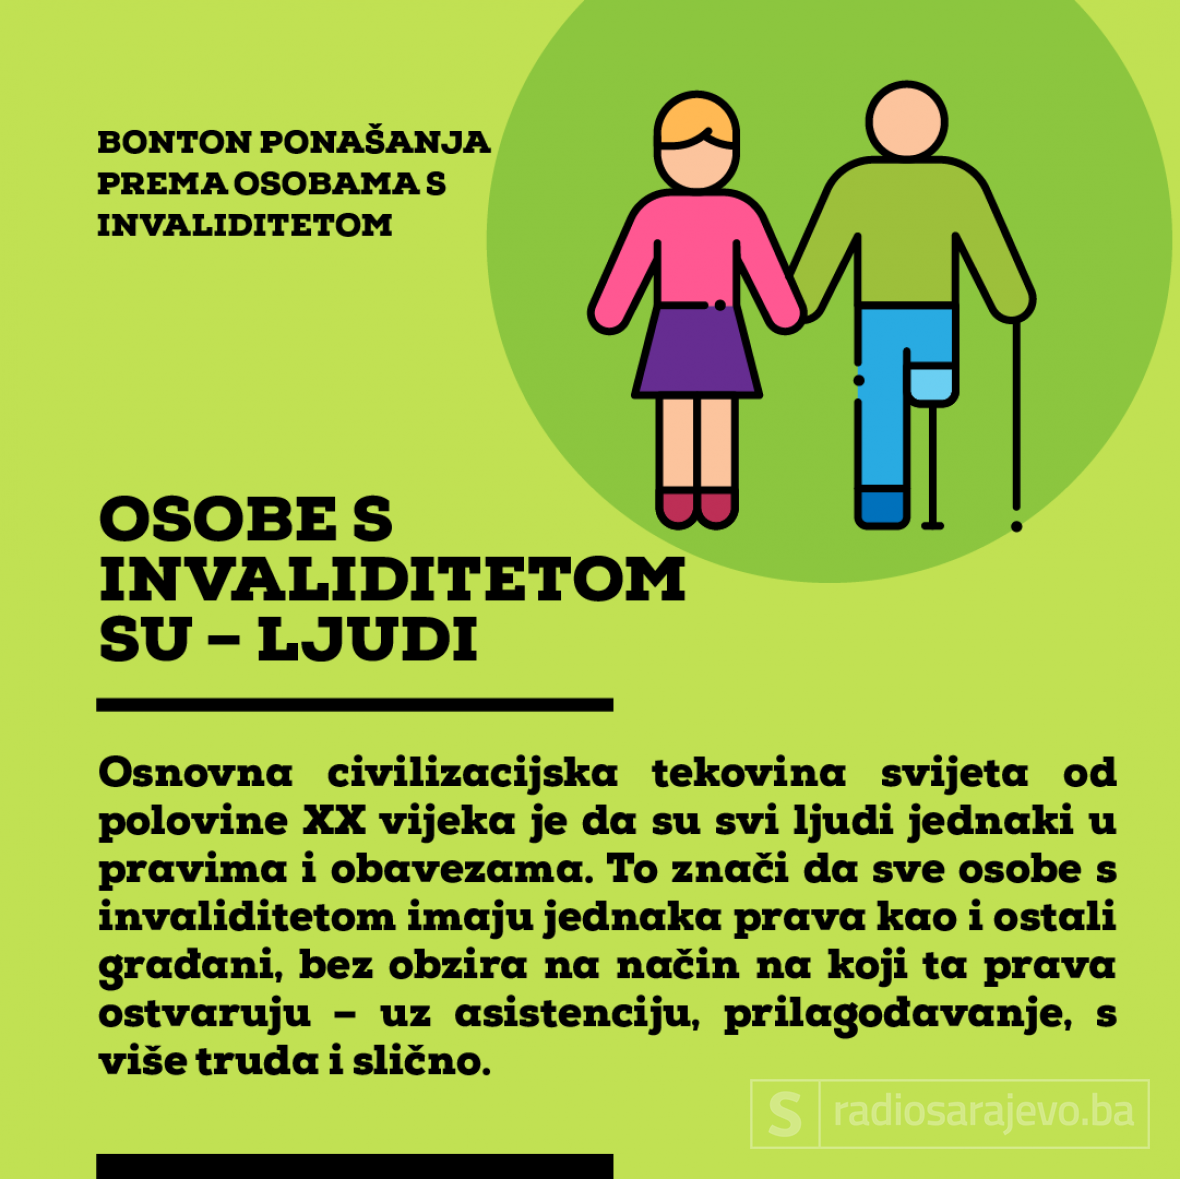 Ilustracija: Azra Kadić, Radiosarajevo.ba /Bonton ponašanja prema osobama s invalididtetom 